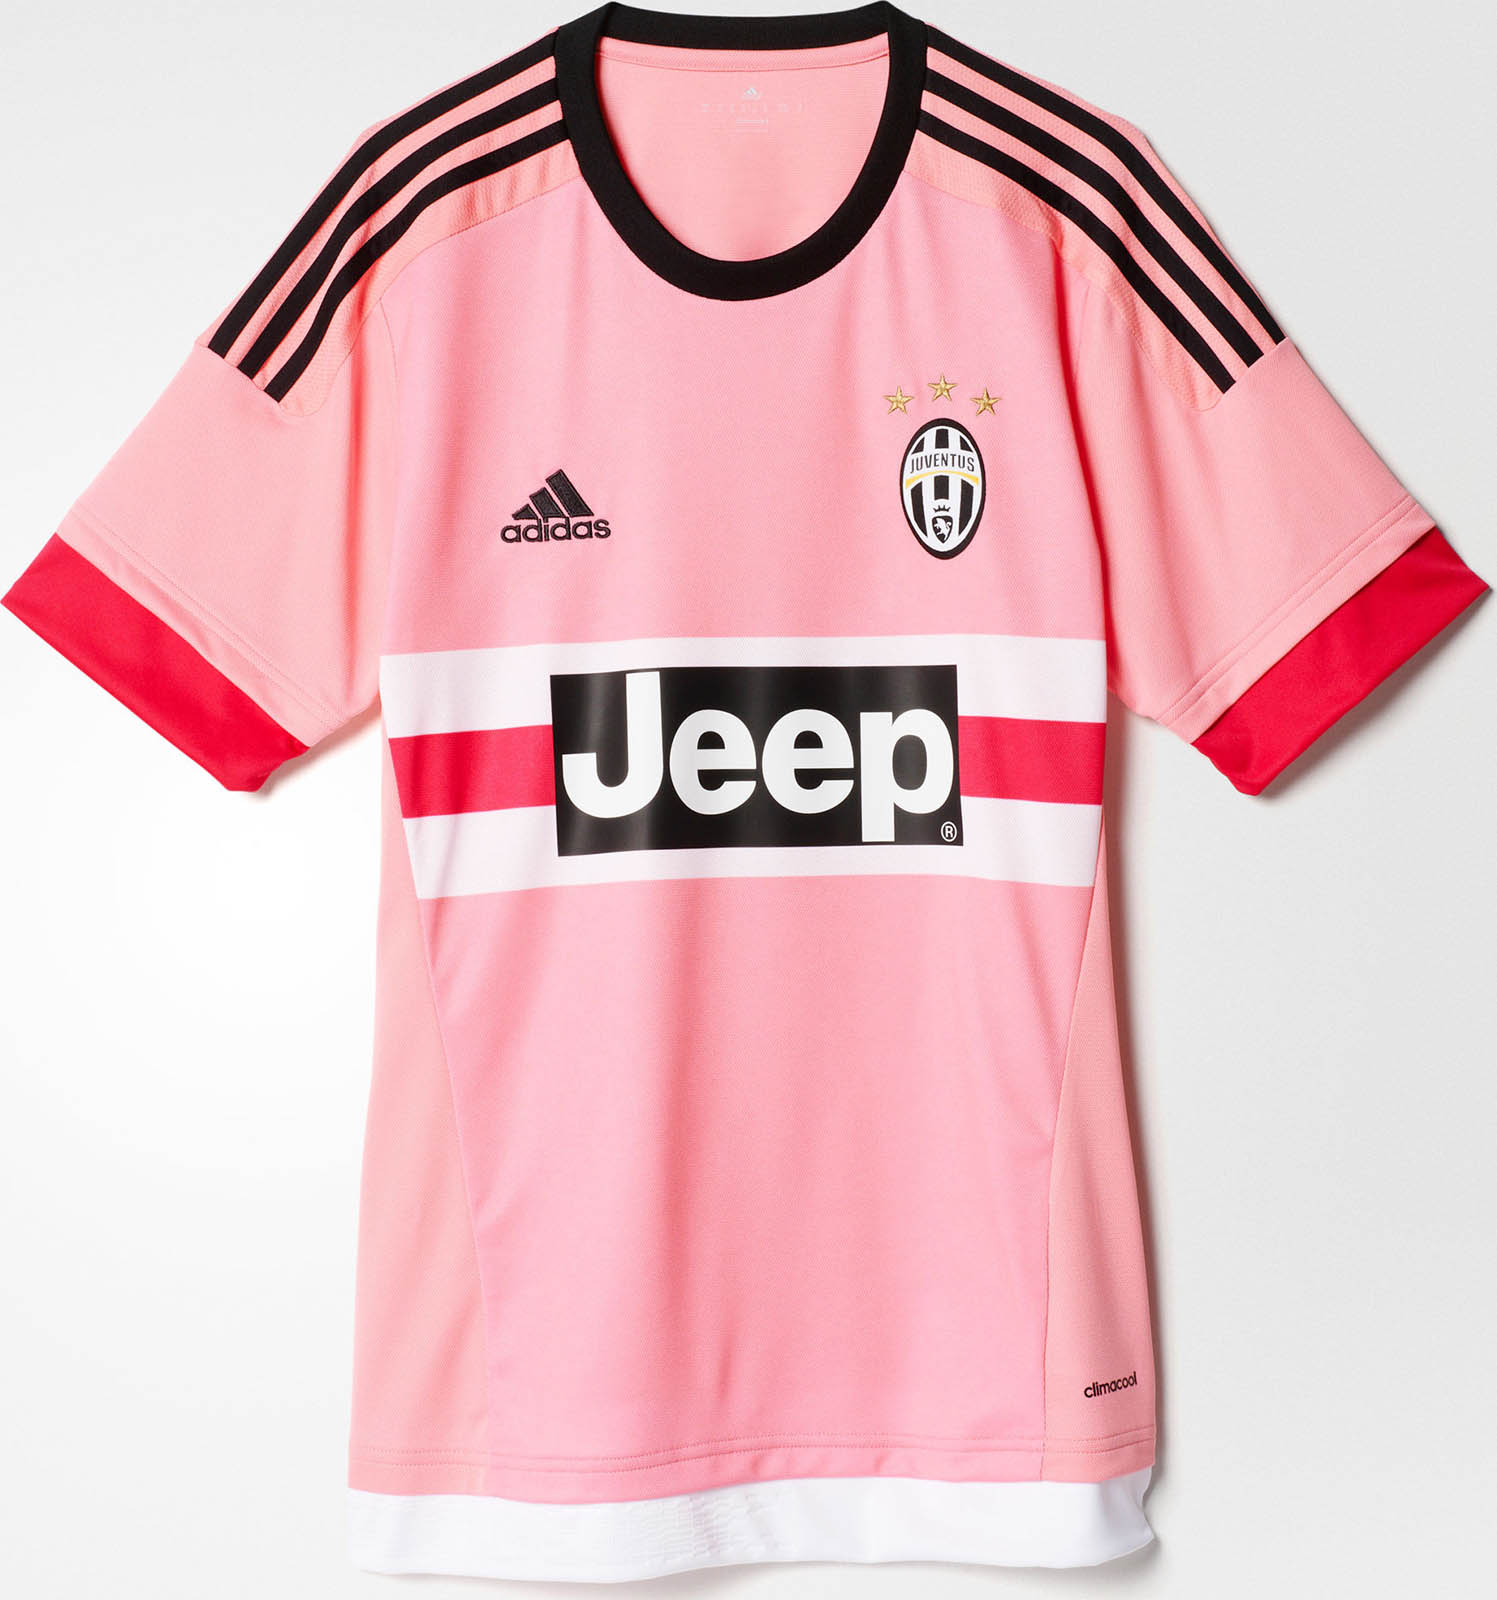 Pink Adidas Juventus 15-16 Kit Released - Footy Headlines